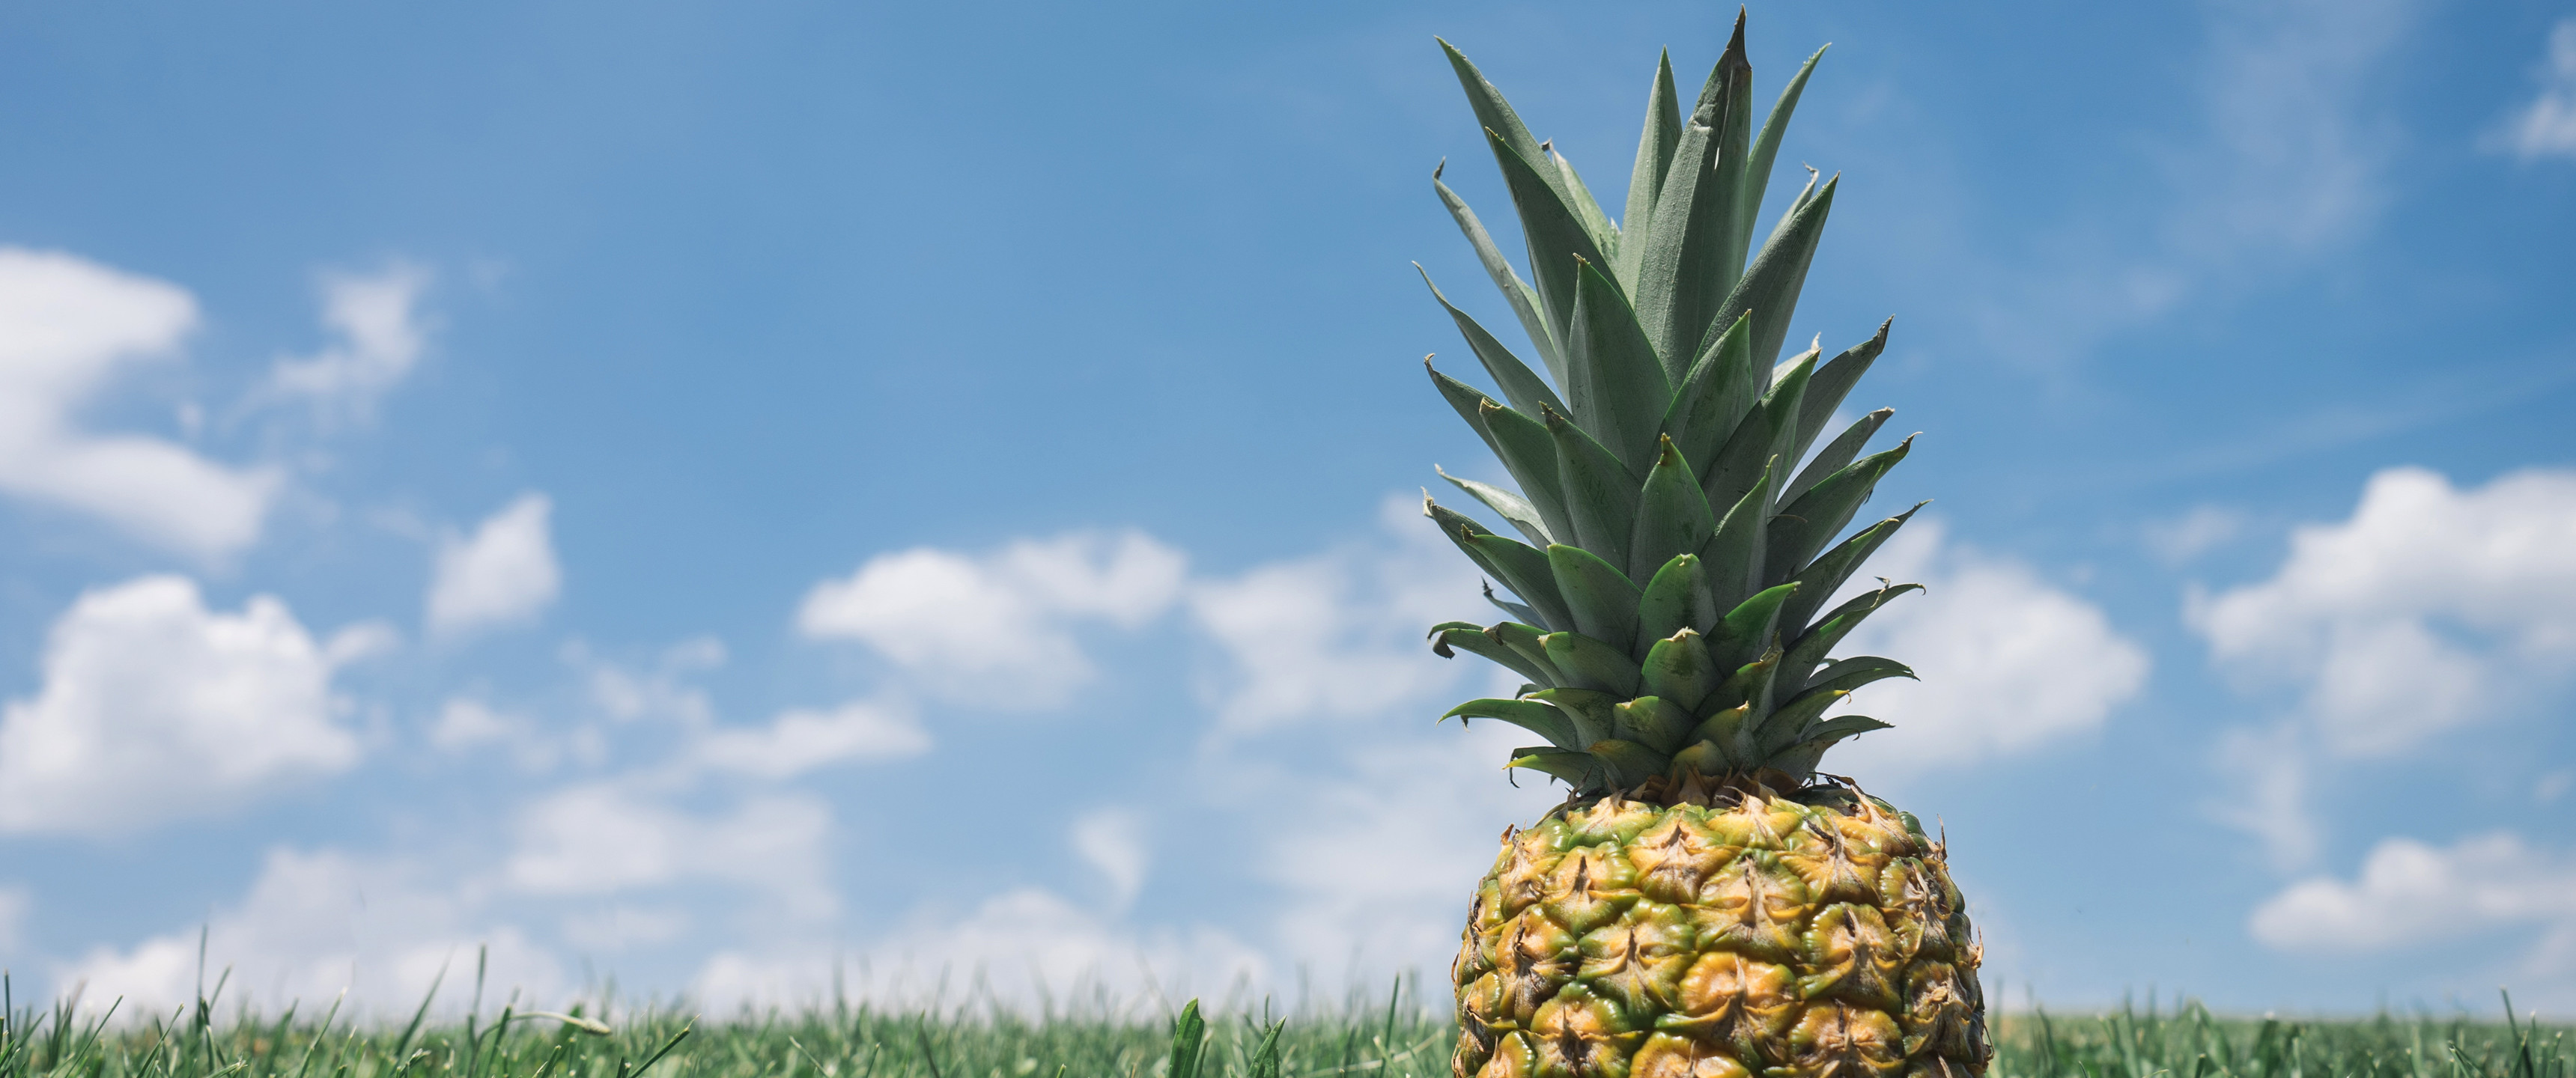 21:9 Ultrawide HD Wallpaper (3440×1440) – Sunbathin' Pineapple